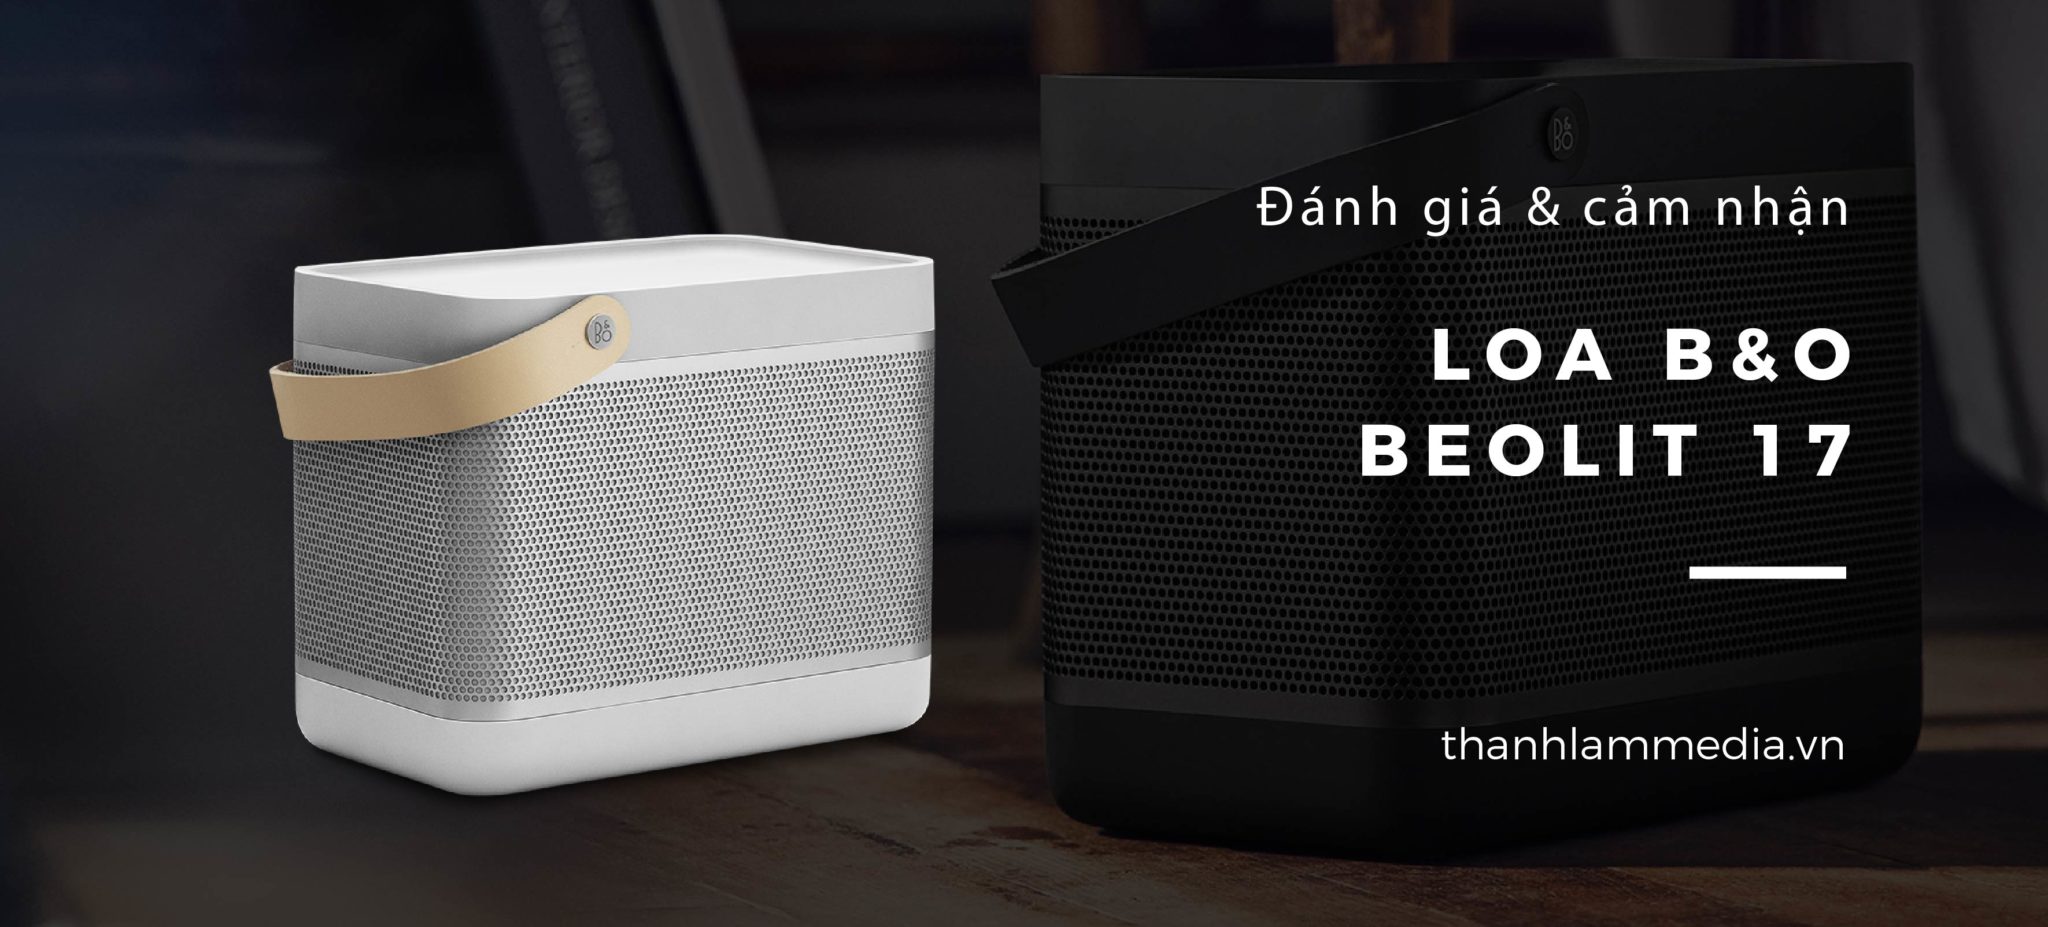 Review Đánh giá Loa Bluetooth B&O Beolit 17: Thiết kế độc đáo, âm thanh sống động 9